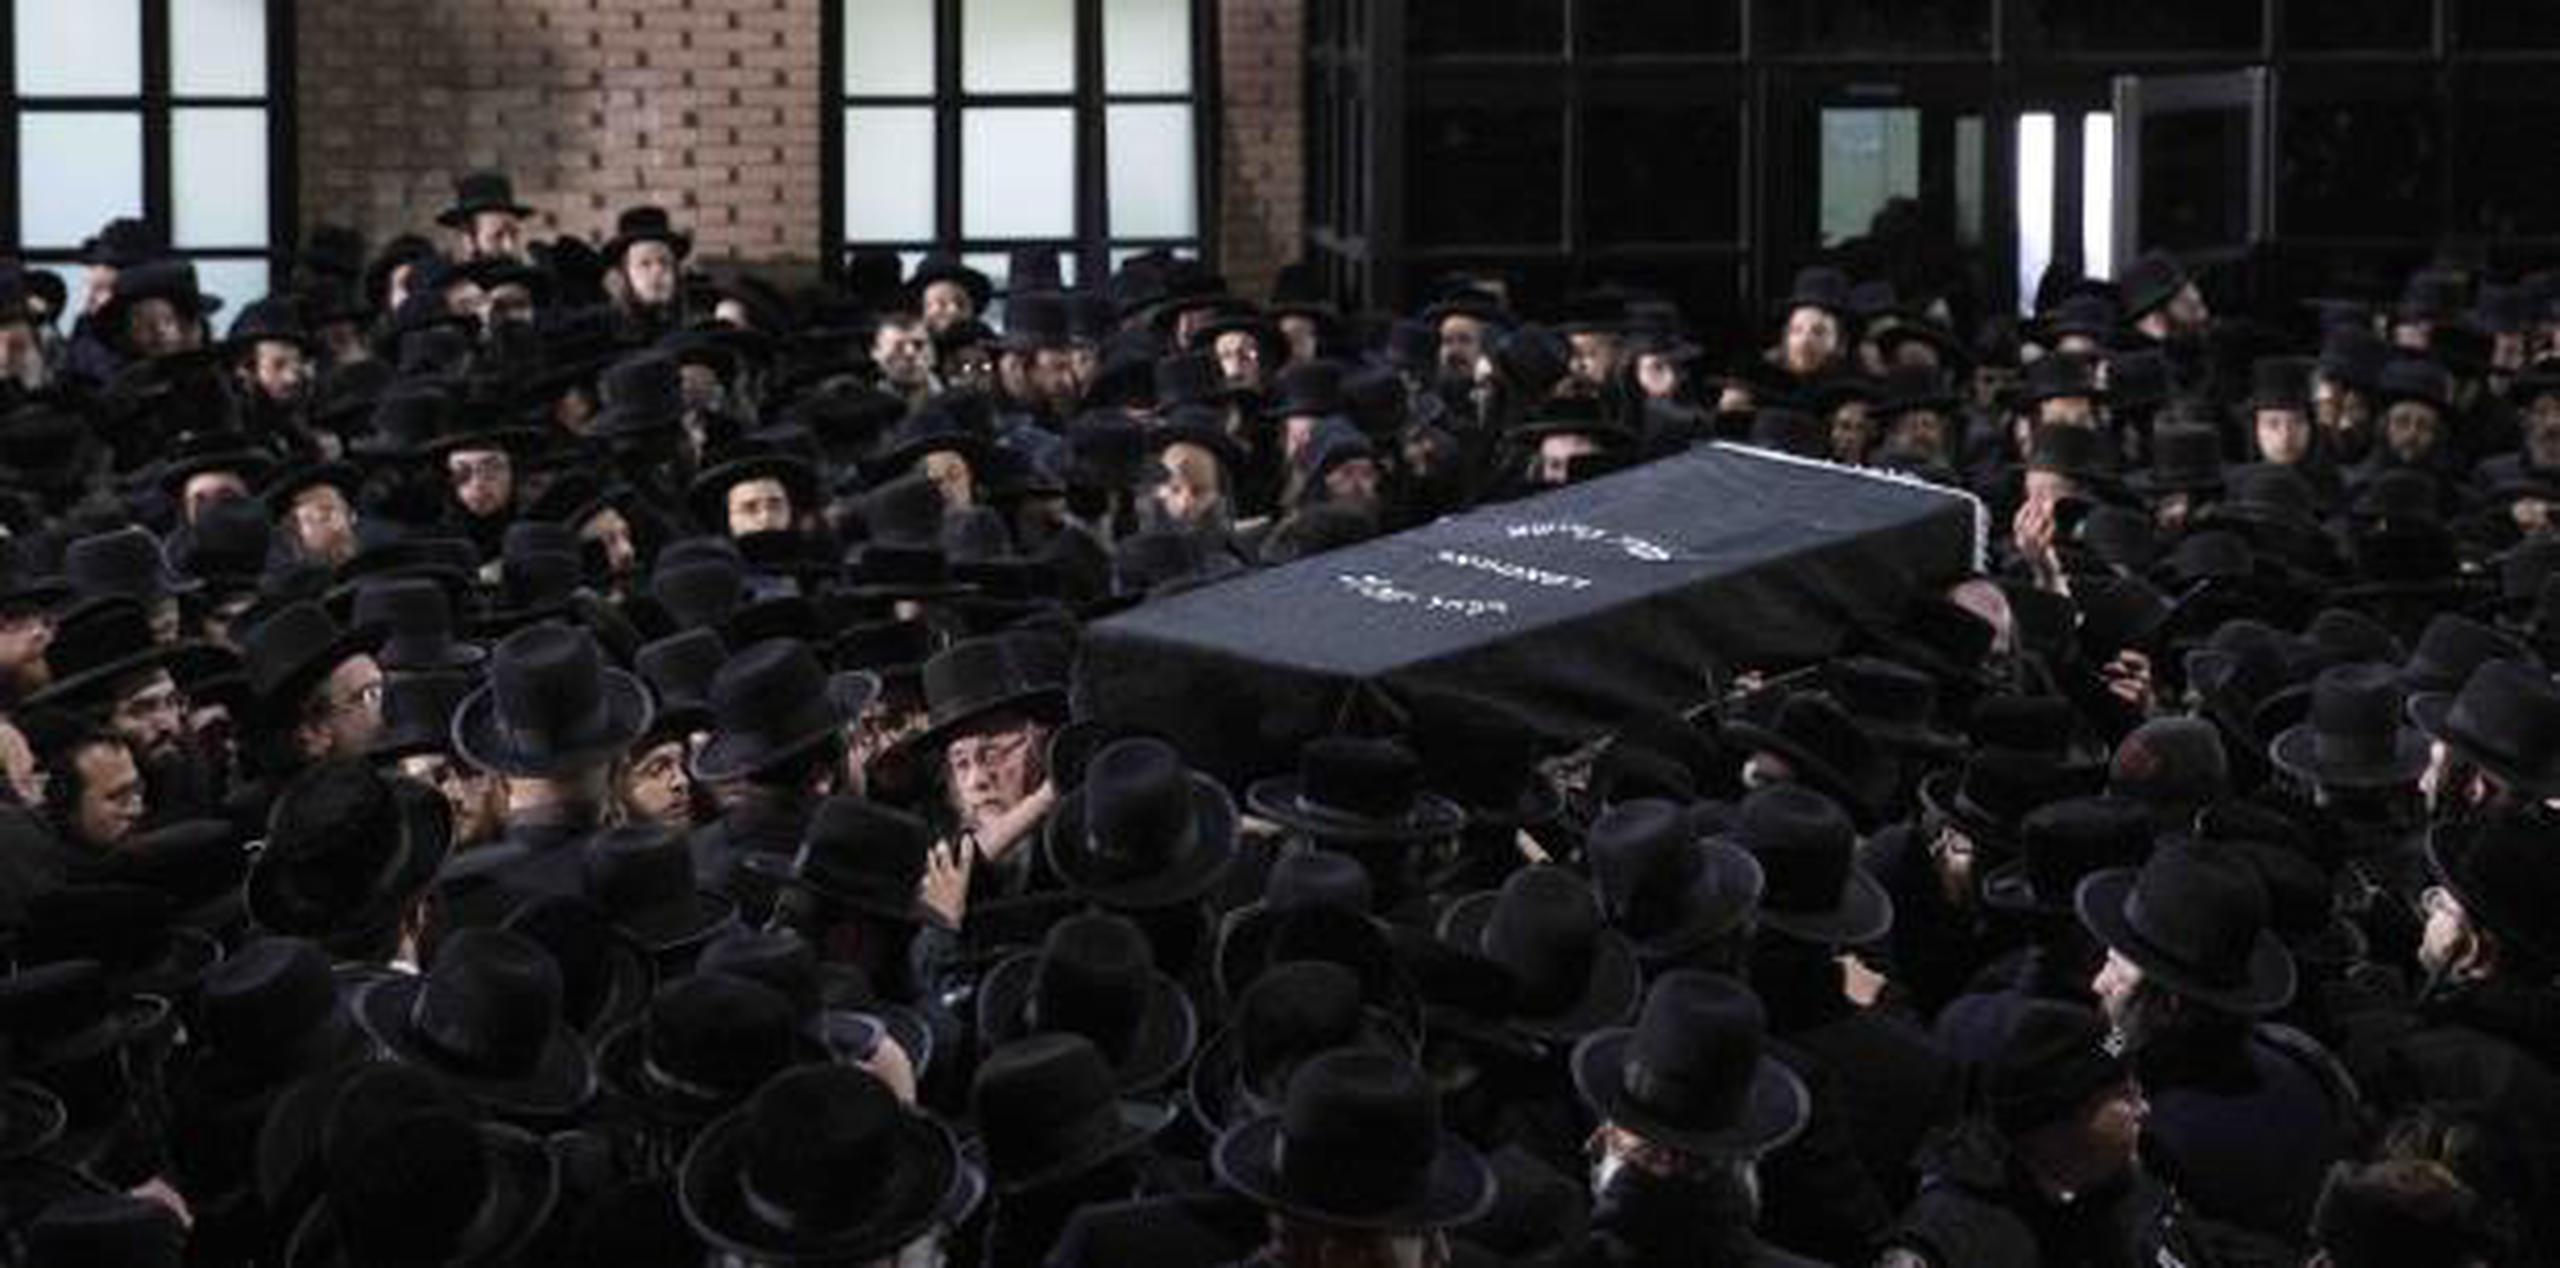 Judíos ortodoxos llevaron el ataúd de Moshe Deutsch afuera de una sinagoga de Brooklyn después de su funeral ayer, miércoles. (AP / Mark Lennihan)